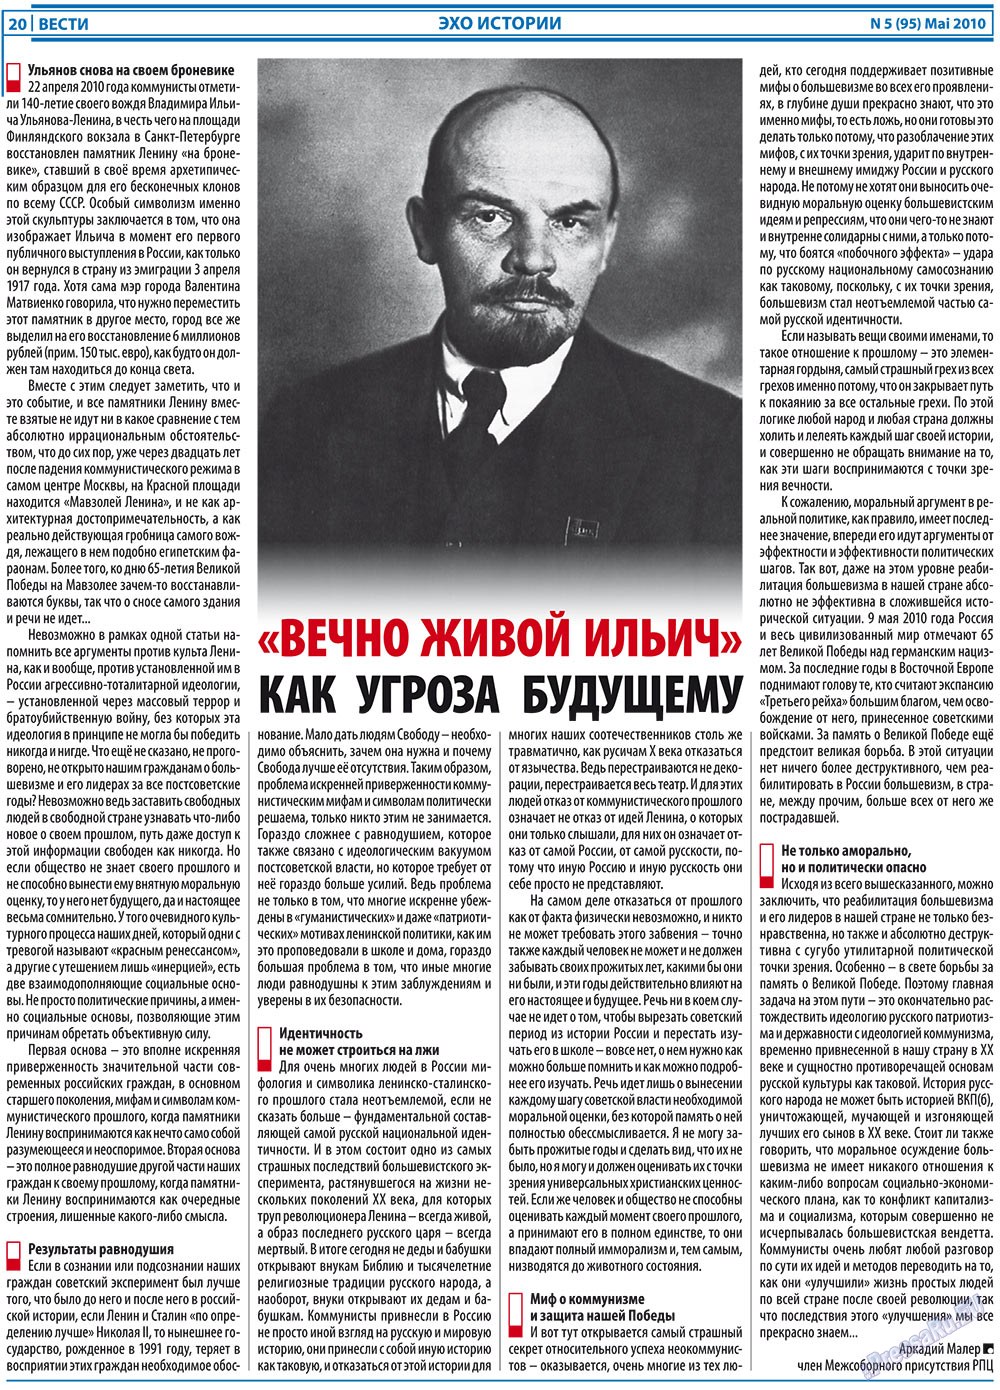 Вести, газета. 2010 №5 стр.20